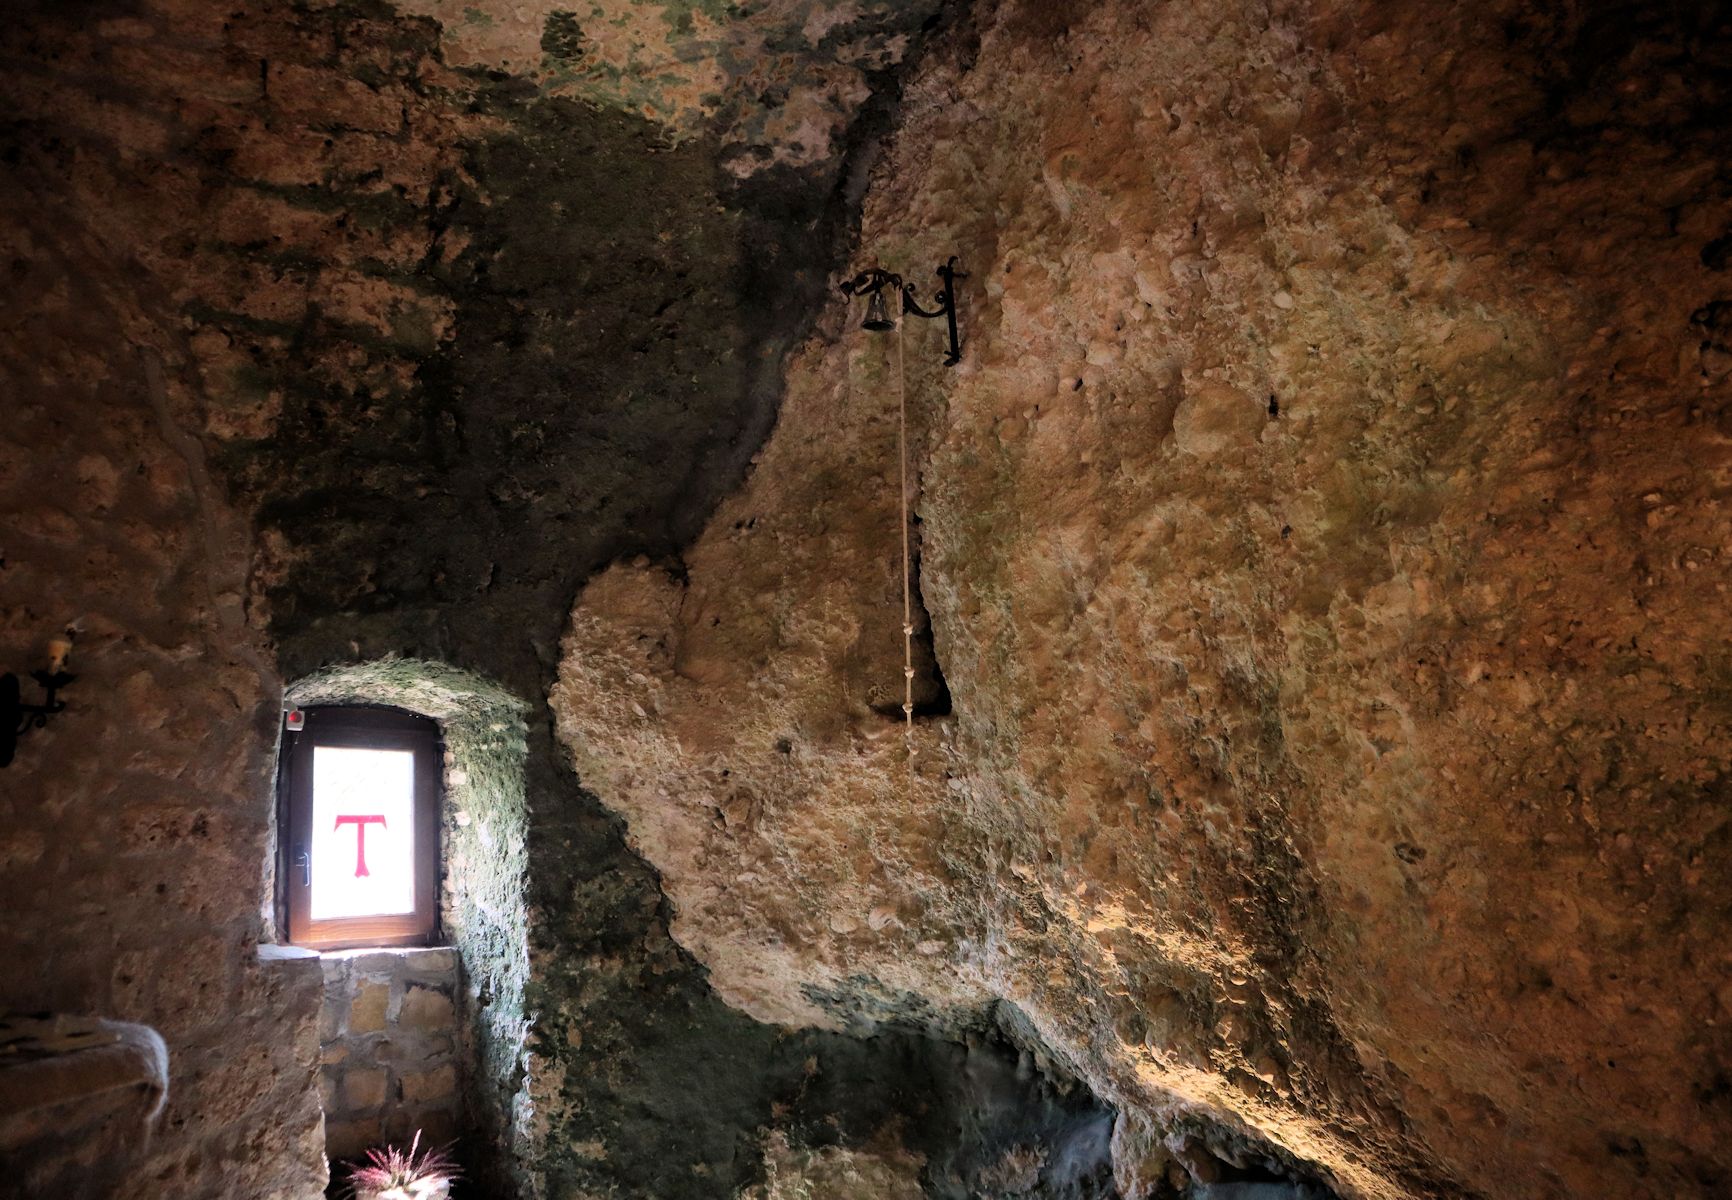 Höhle unterhalb des heutigen Sanktuariums Fonte Colombo bei Rieti, in der Franziskus die - für ihn - endgültige Regel des Franziskanerordens diktierte